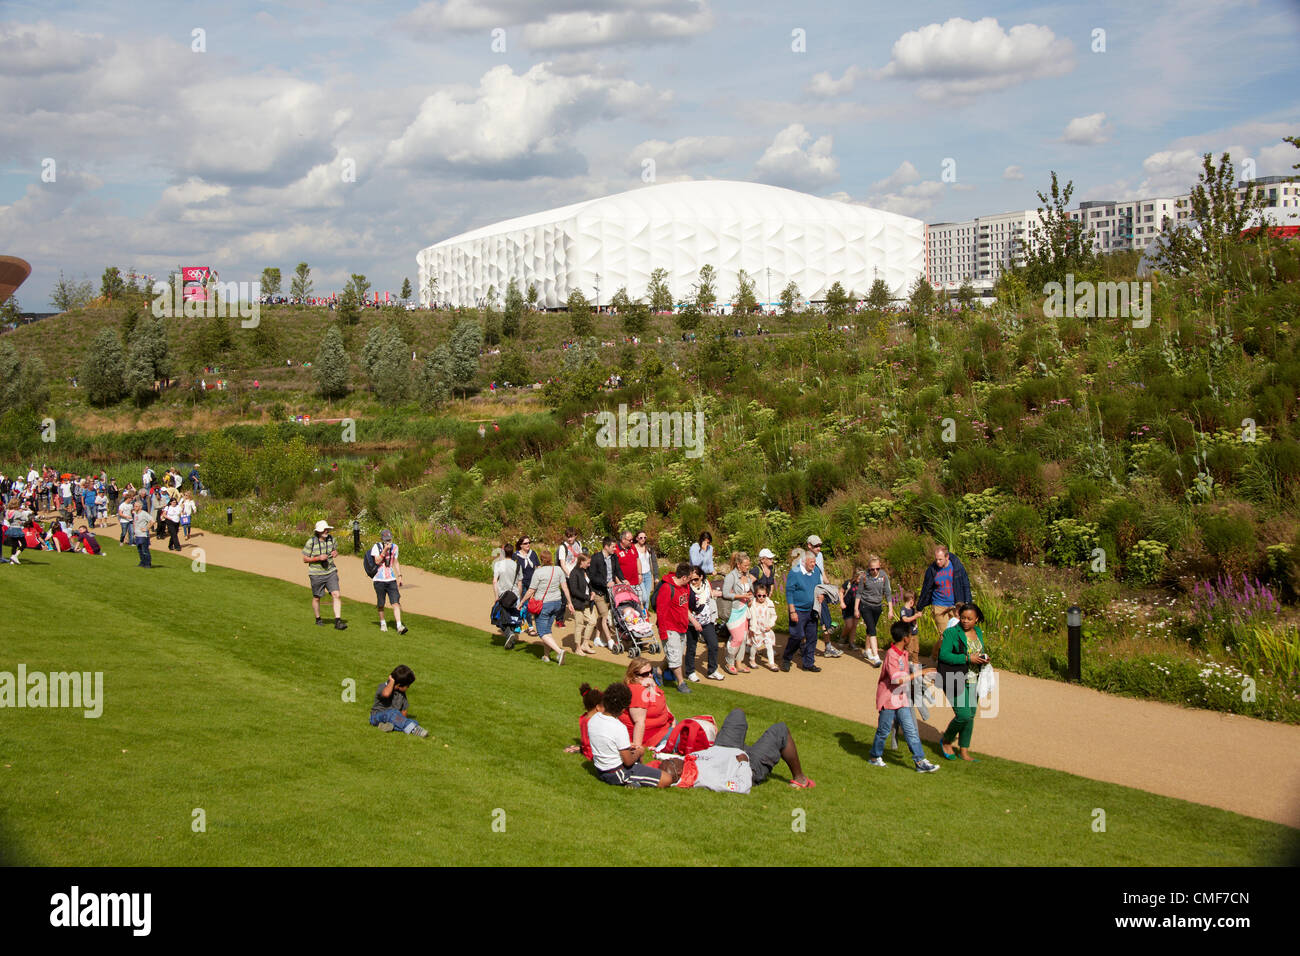 Personas sentadas en el césped en el sol en un día soleado con arena de baloncesto en el Parque Olímpico, el sitio de los Juegos Olímpicos de Londres 2012, Stratford London E20, REINO UNIDO Foto de stock